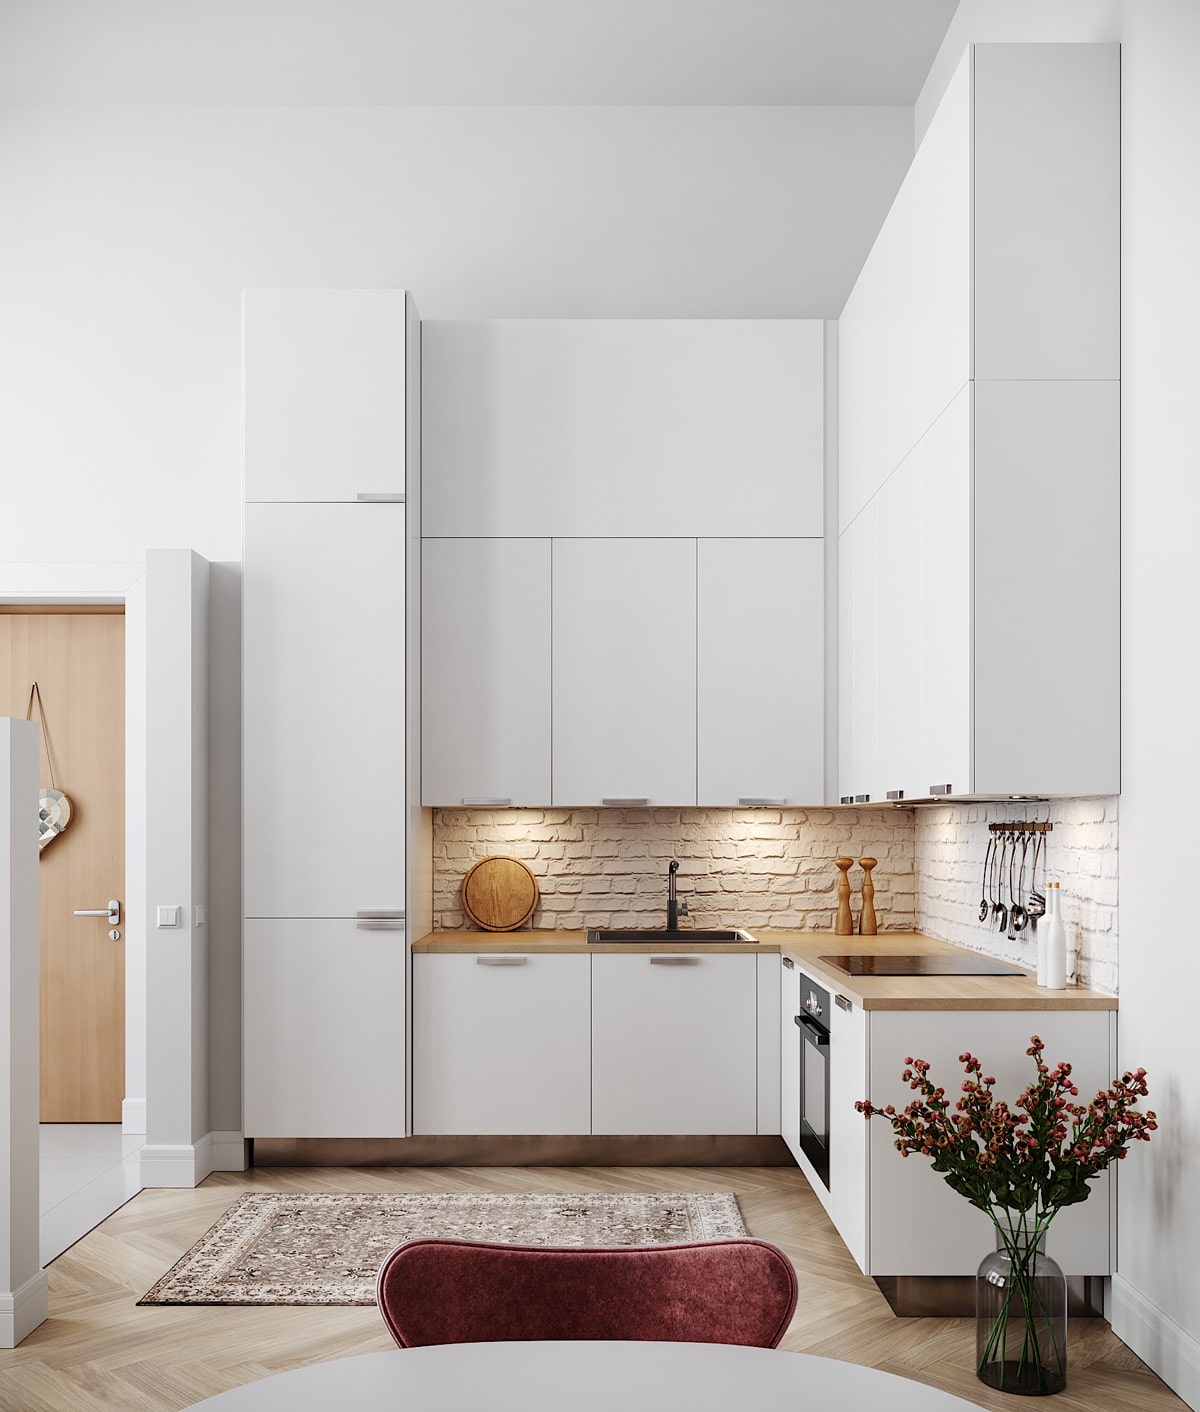 طراحی آشپزخانه به صورت L با دو لاین عمود بر هم